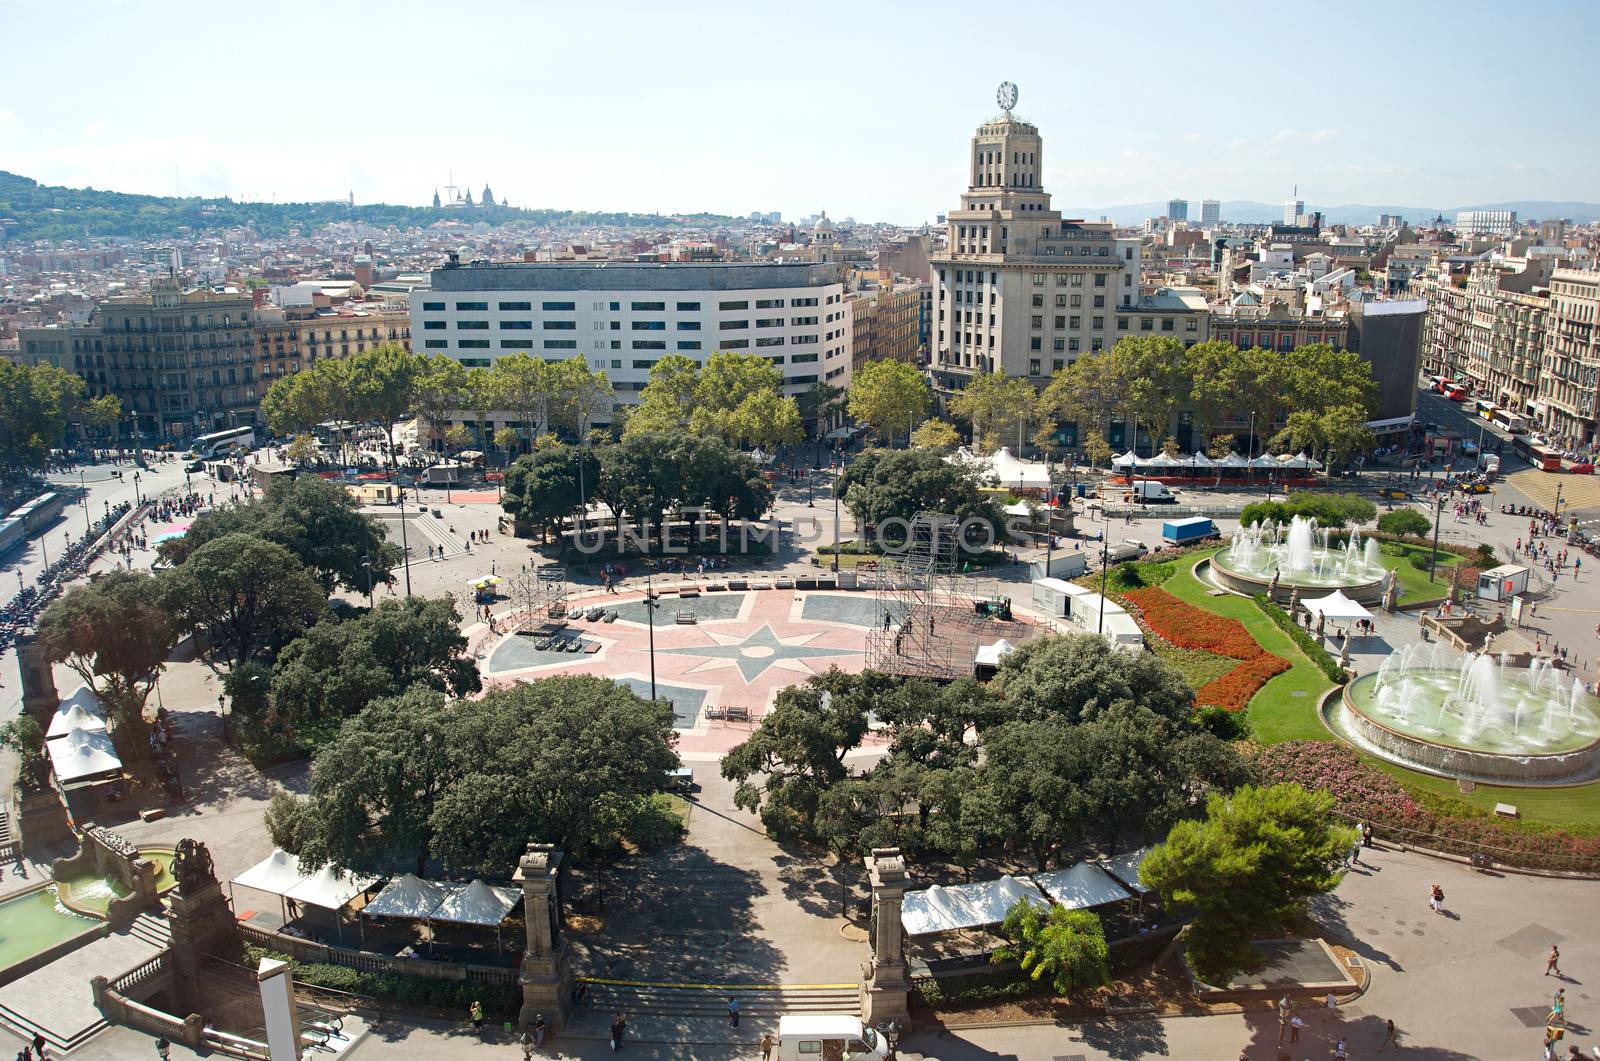 Central square in Barcelona by joyfull